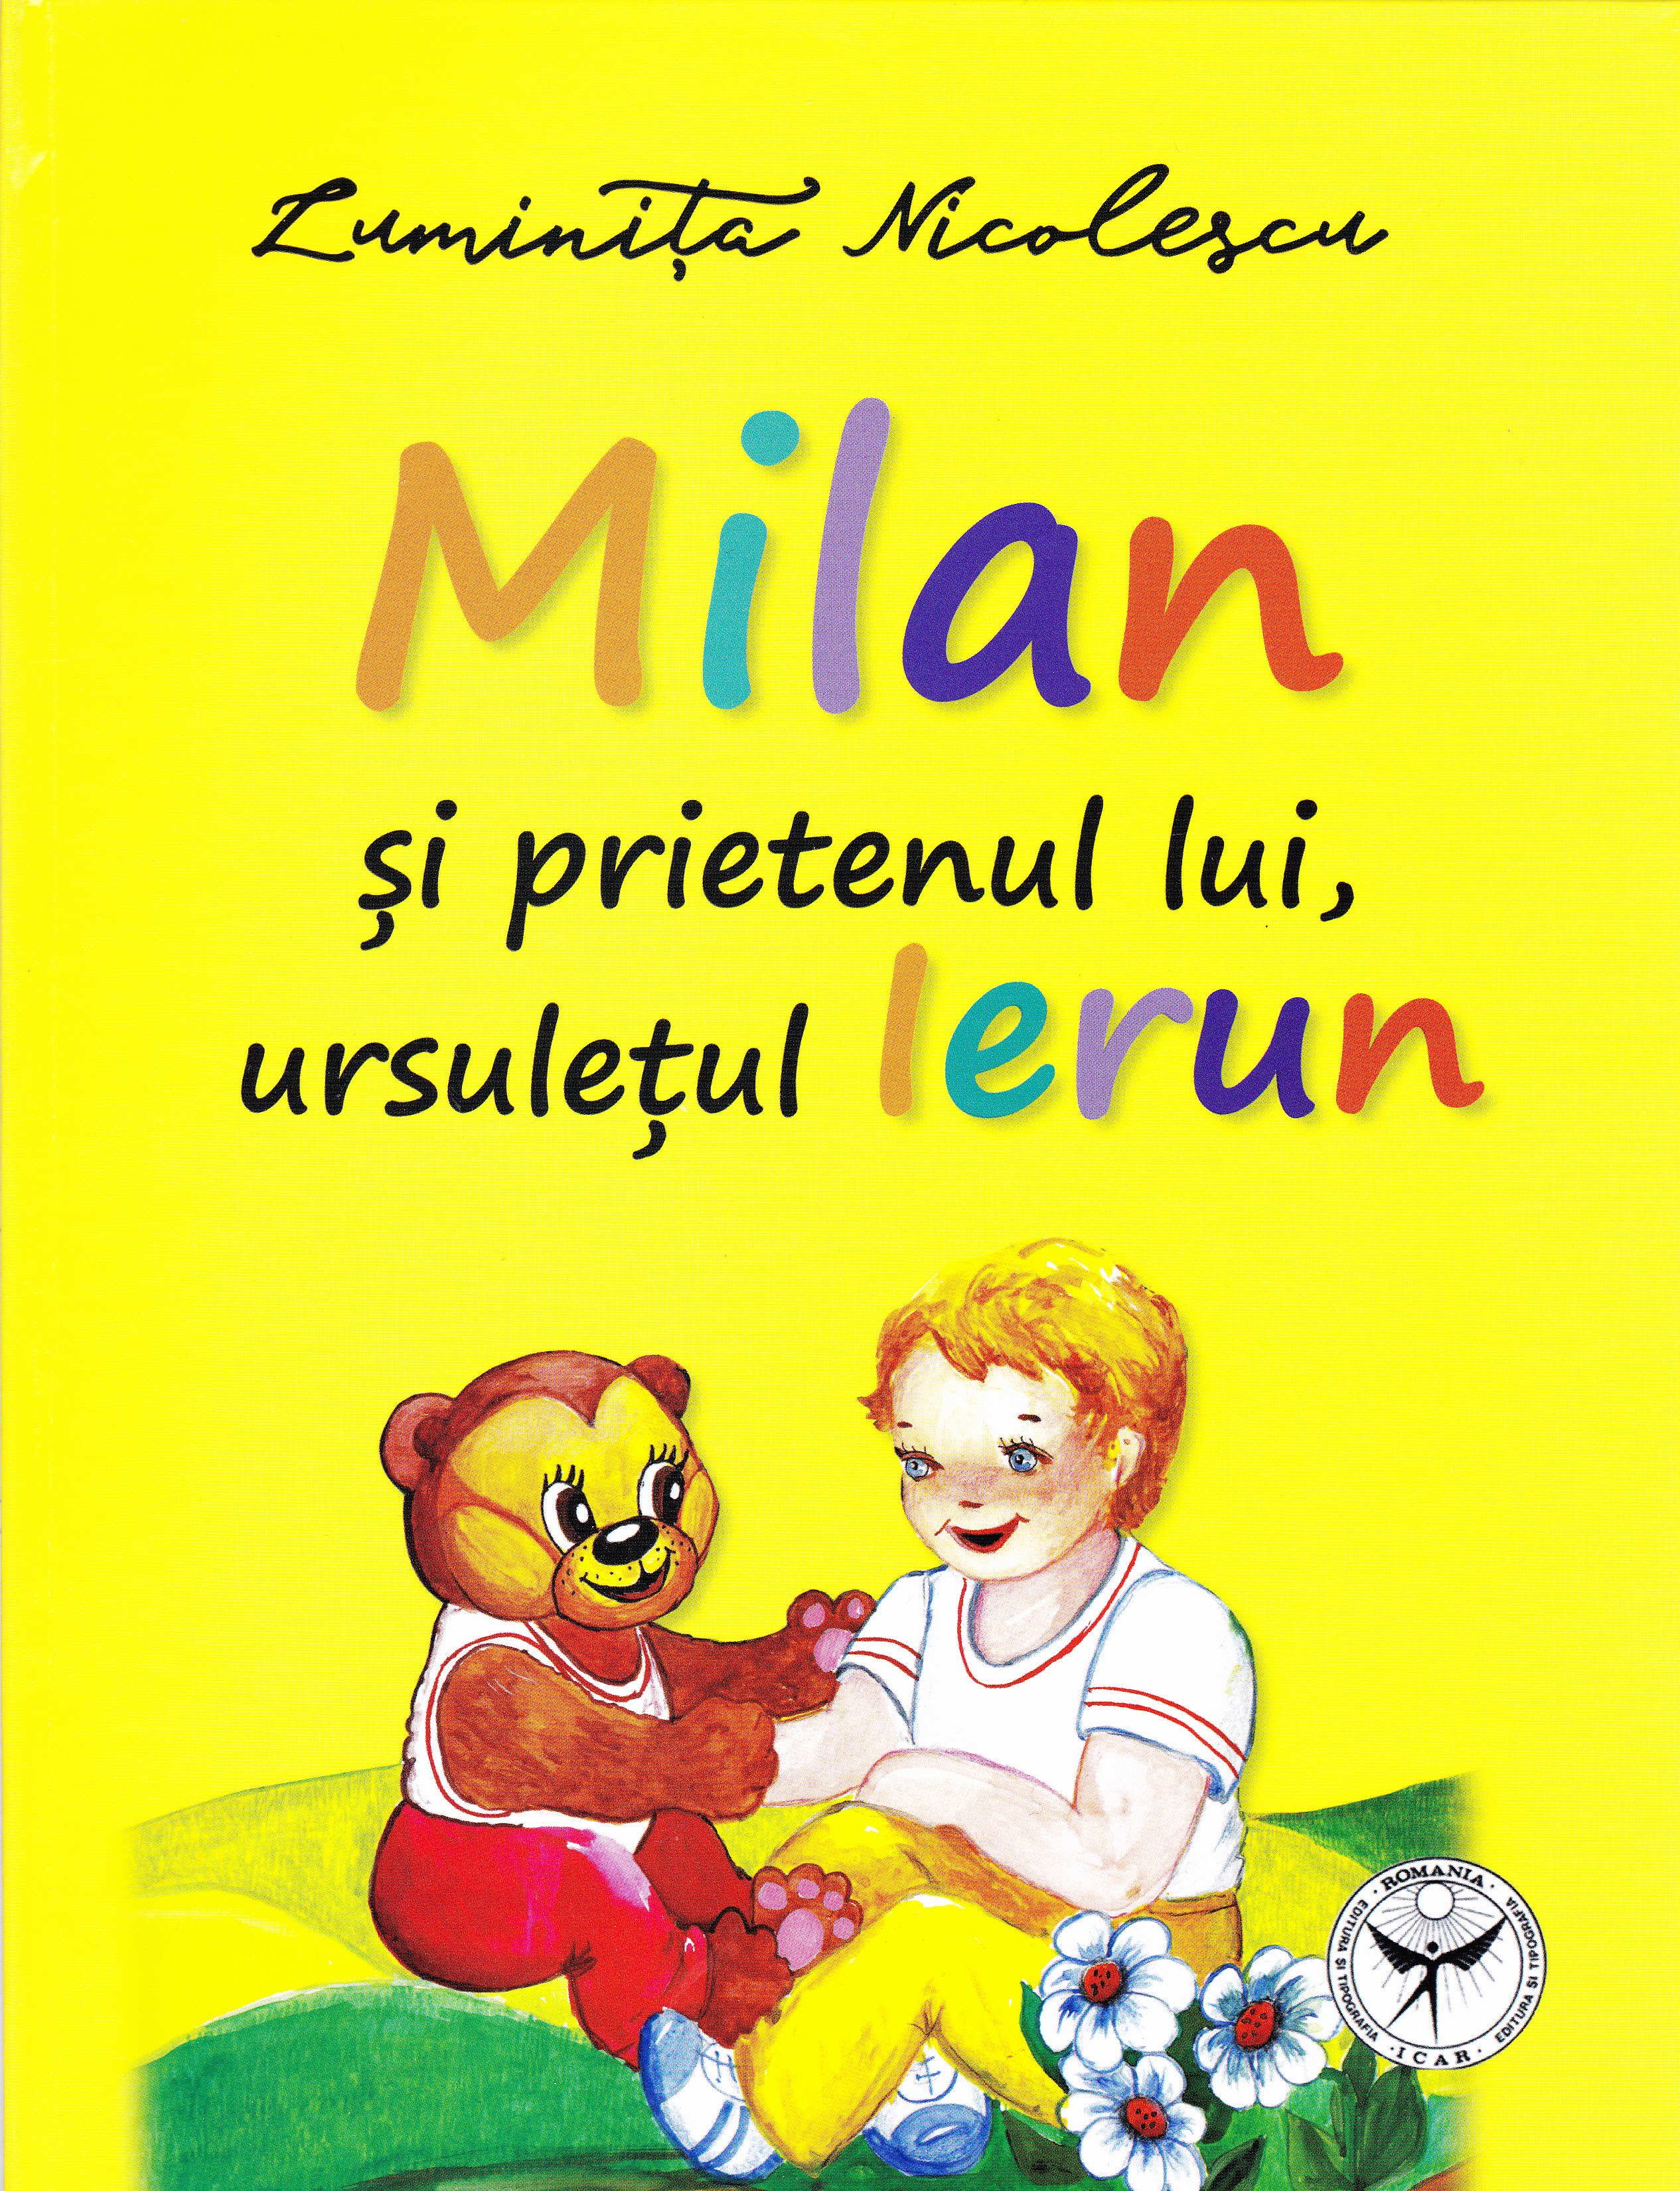 Milan si prietenul lui, ursuletul Ierun - Luminita Nicolescu